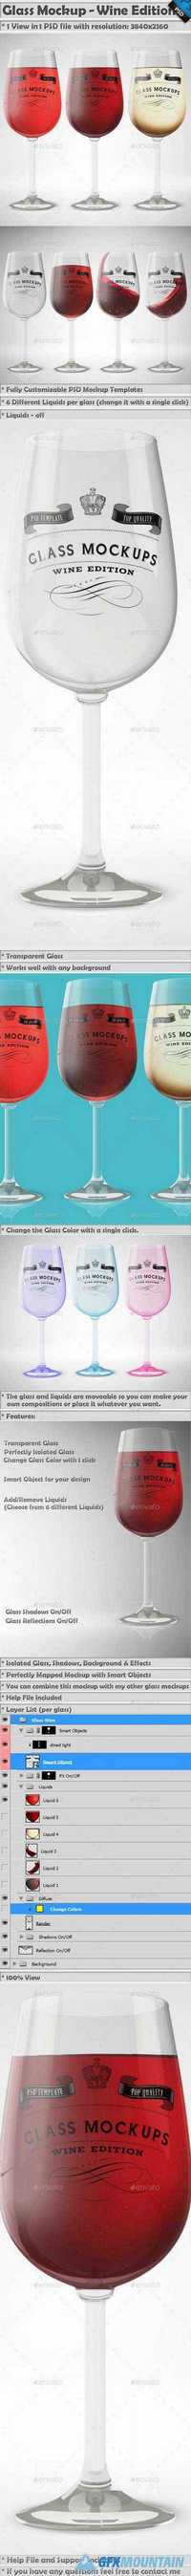 Glass Mockup - Wine Glass Mockup Volume 13